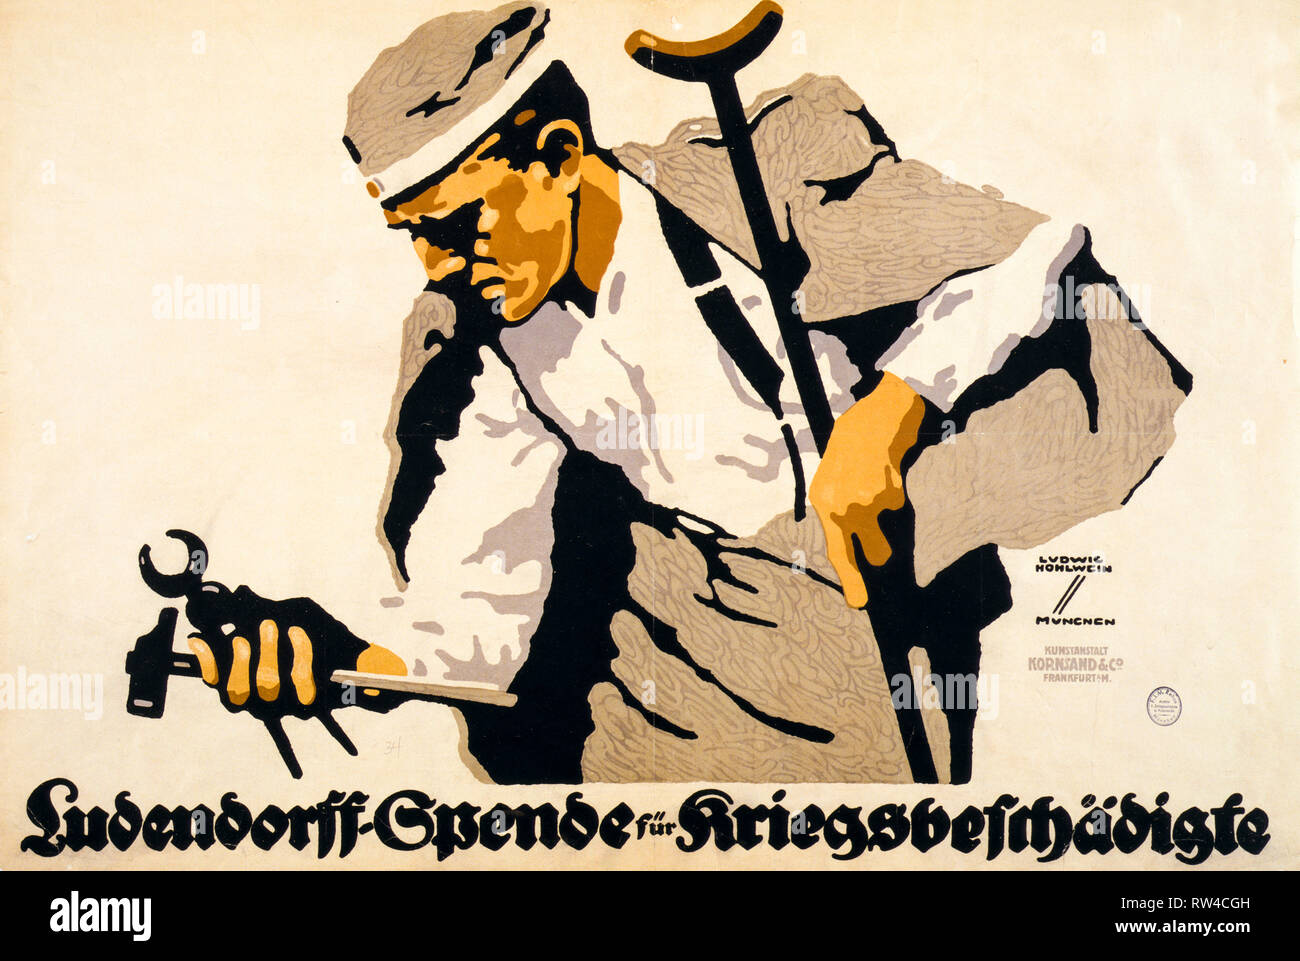 Il tedesco guerra mondiale 1 poster chiedendo donazioni di strumenti per i soldati feriti, c. 1914 - 1918, Ludwig Hohlwein - LOC Foto Stock